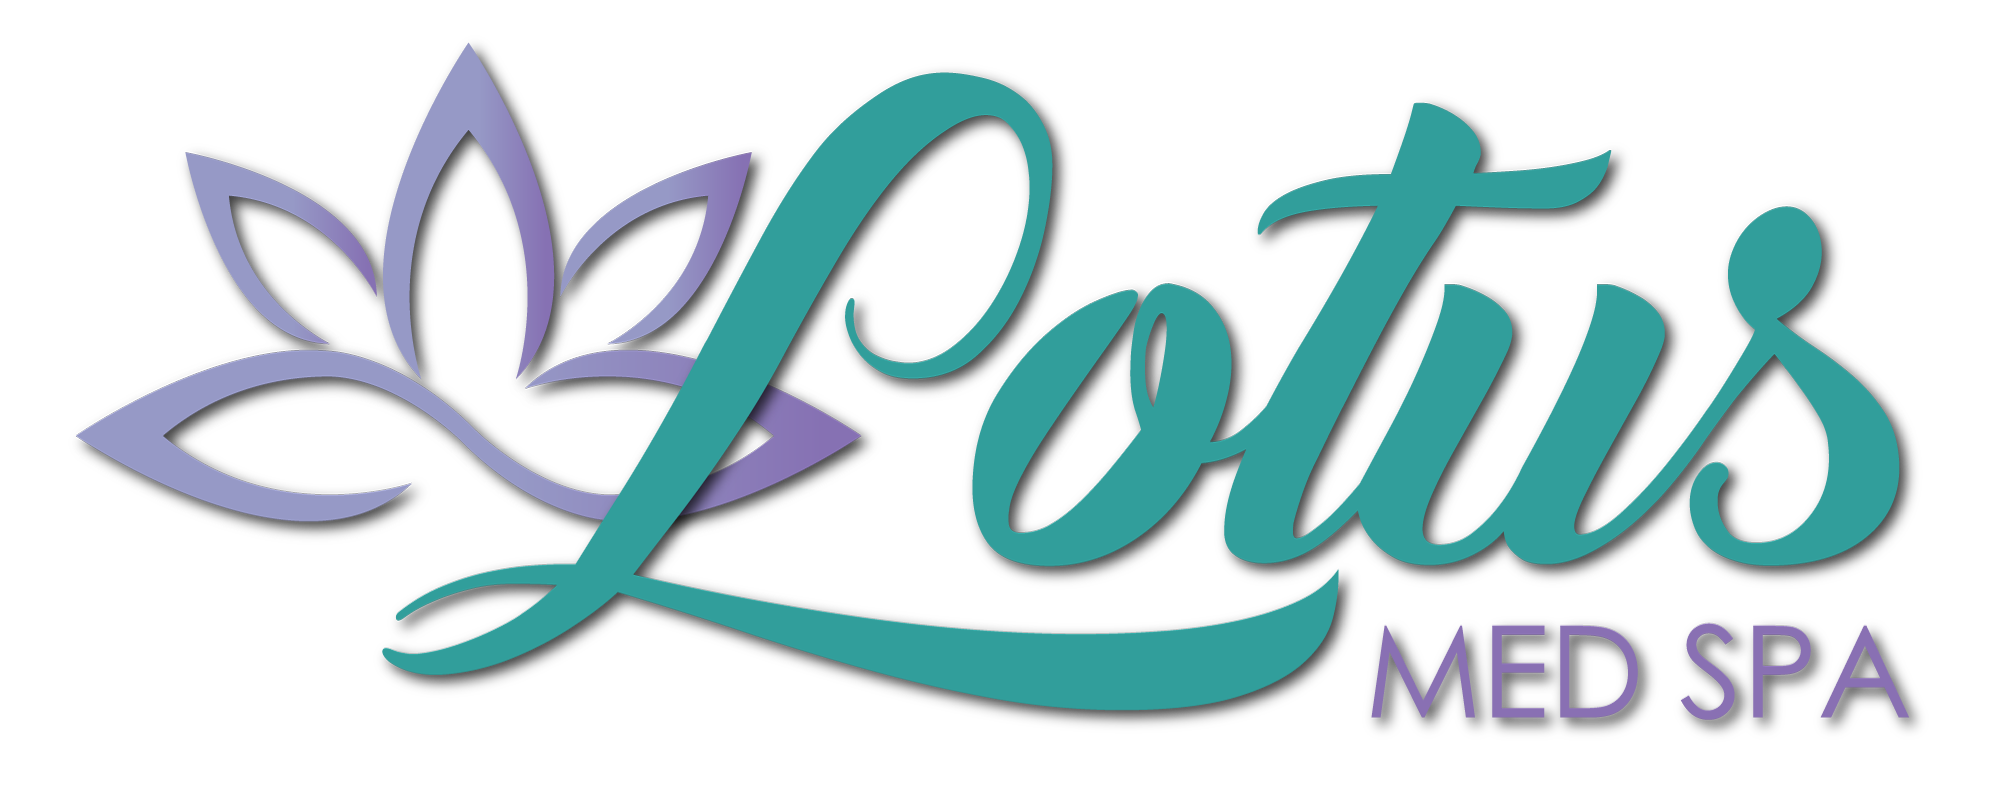 Lotus Med Spa Logo